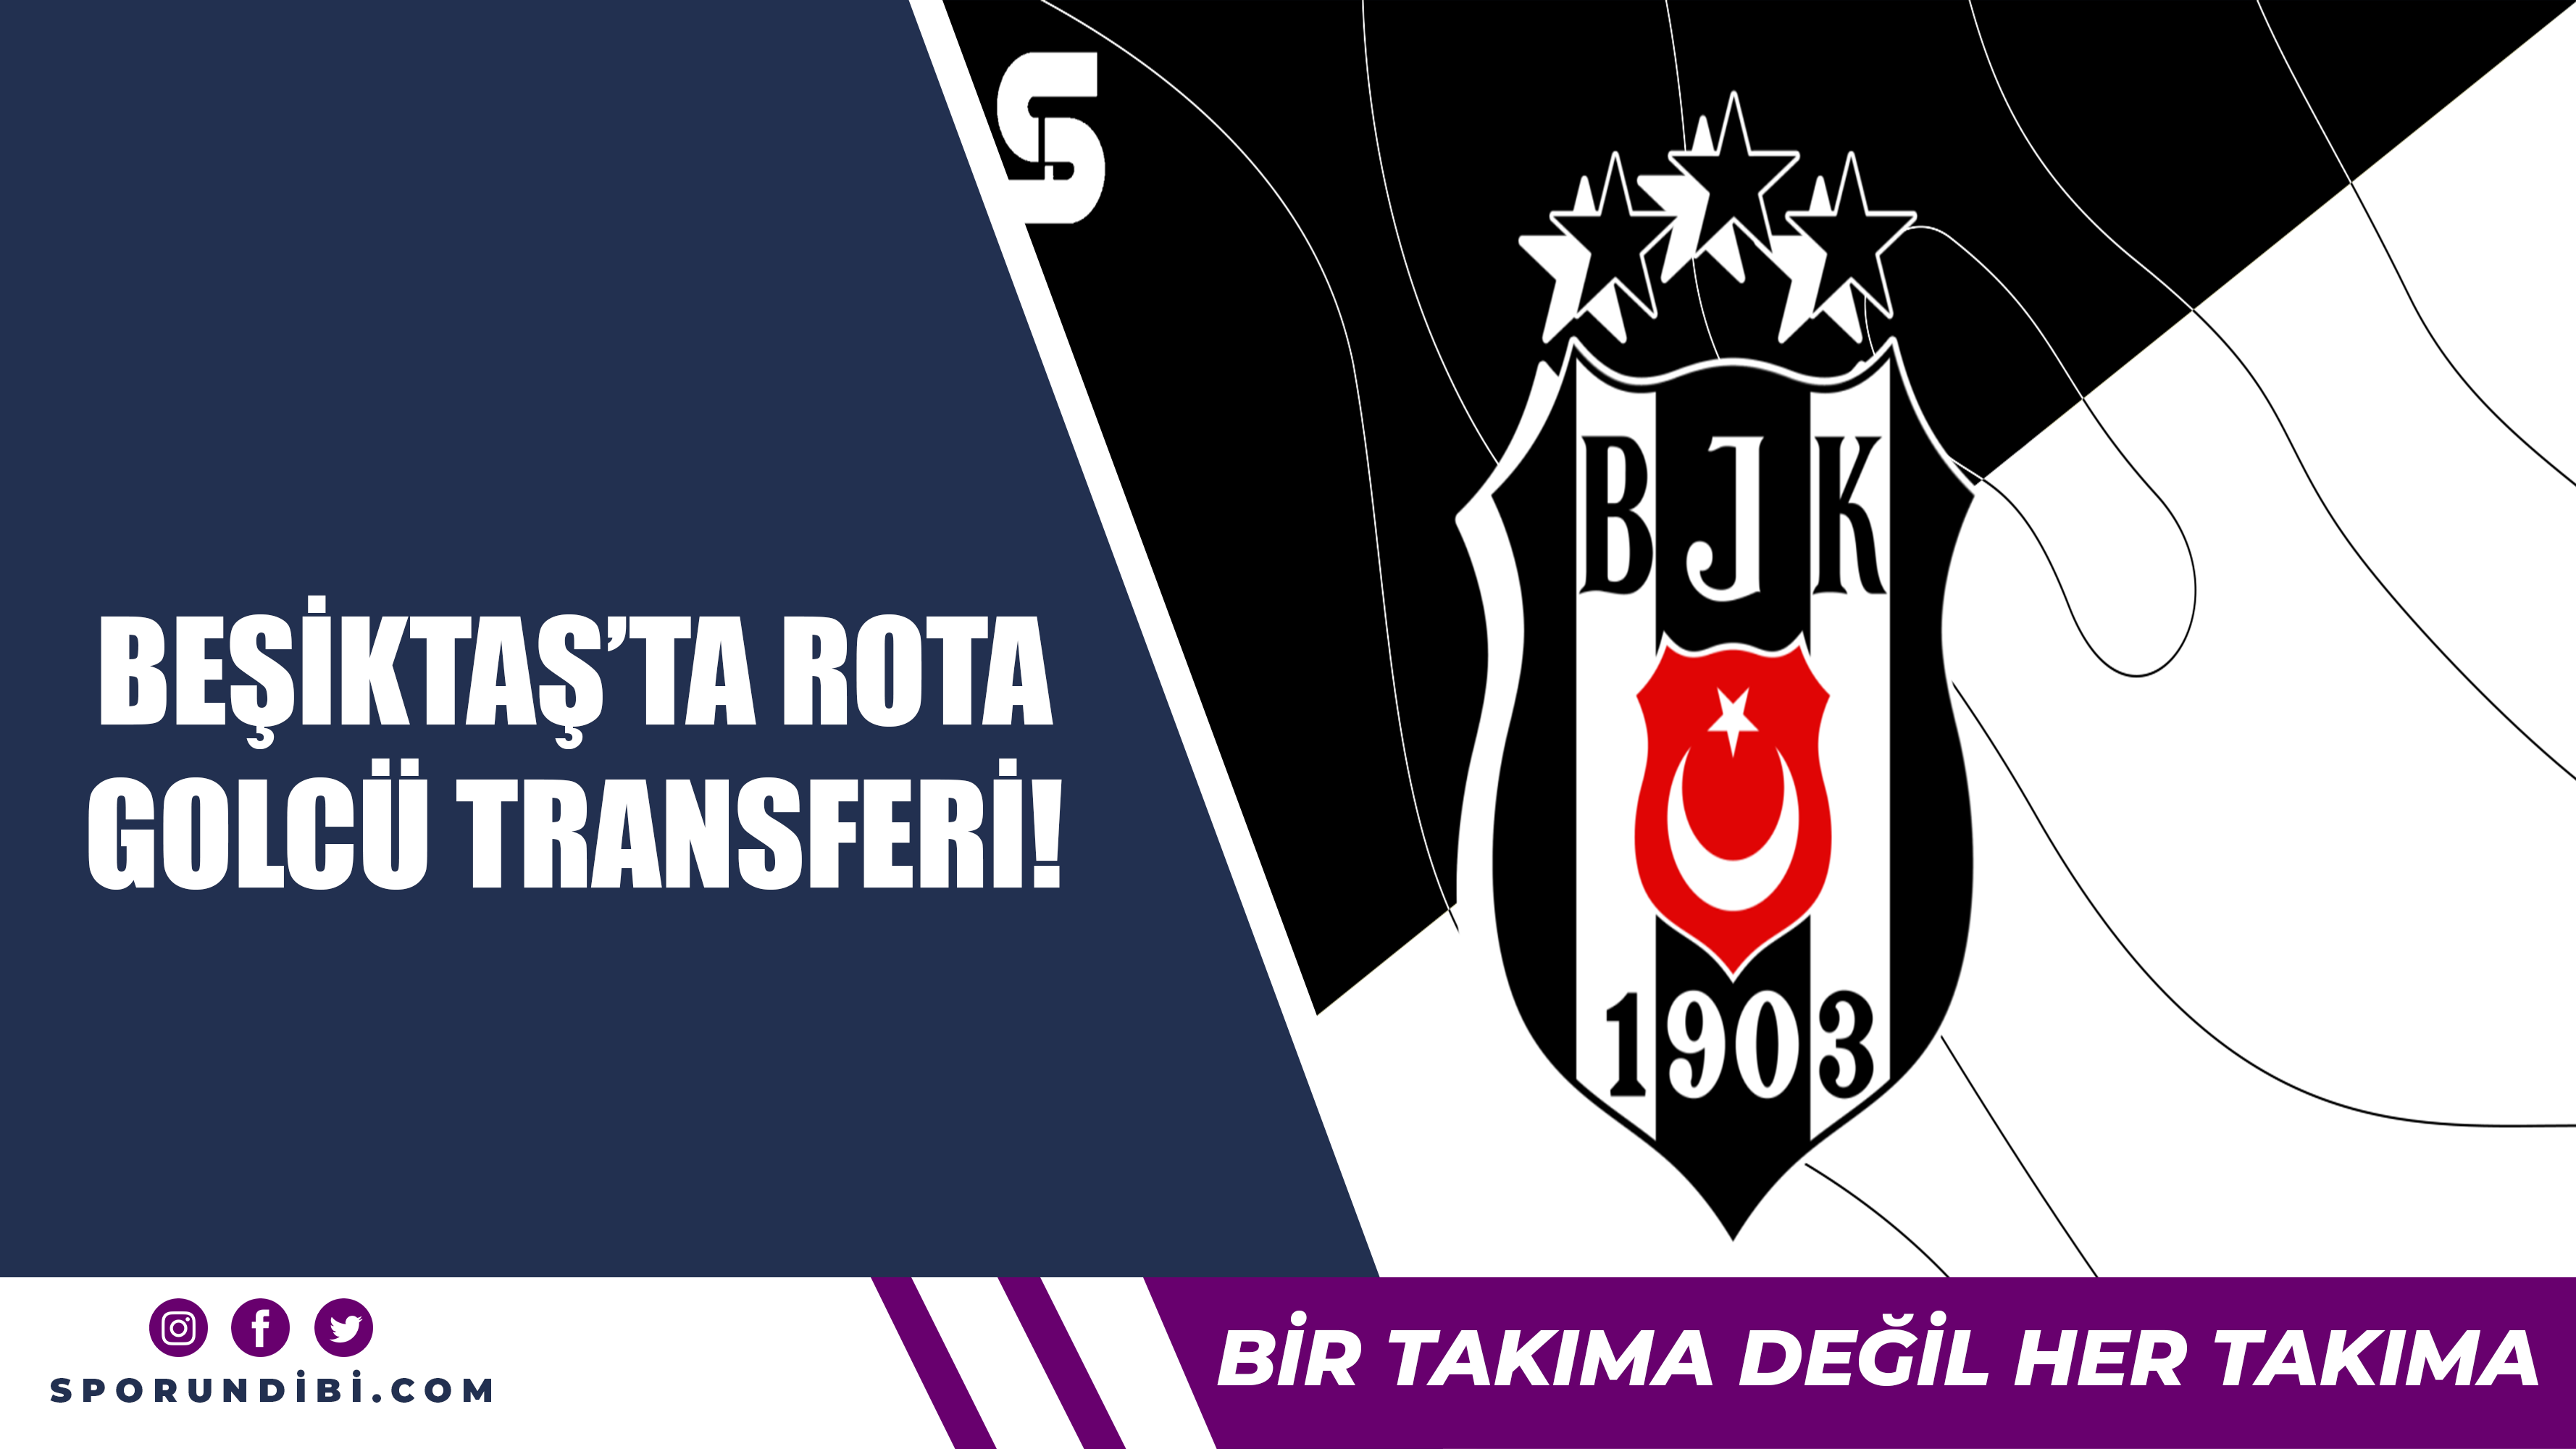 Beşiktaş'ta rota golcü transferi!